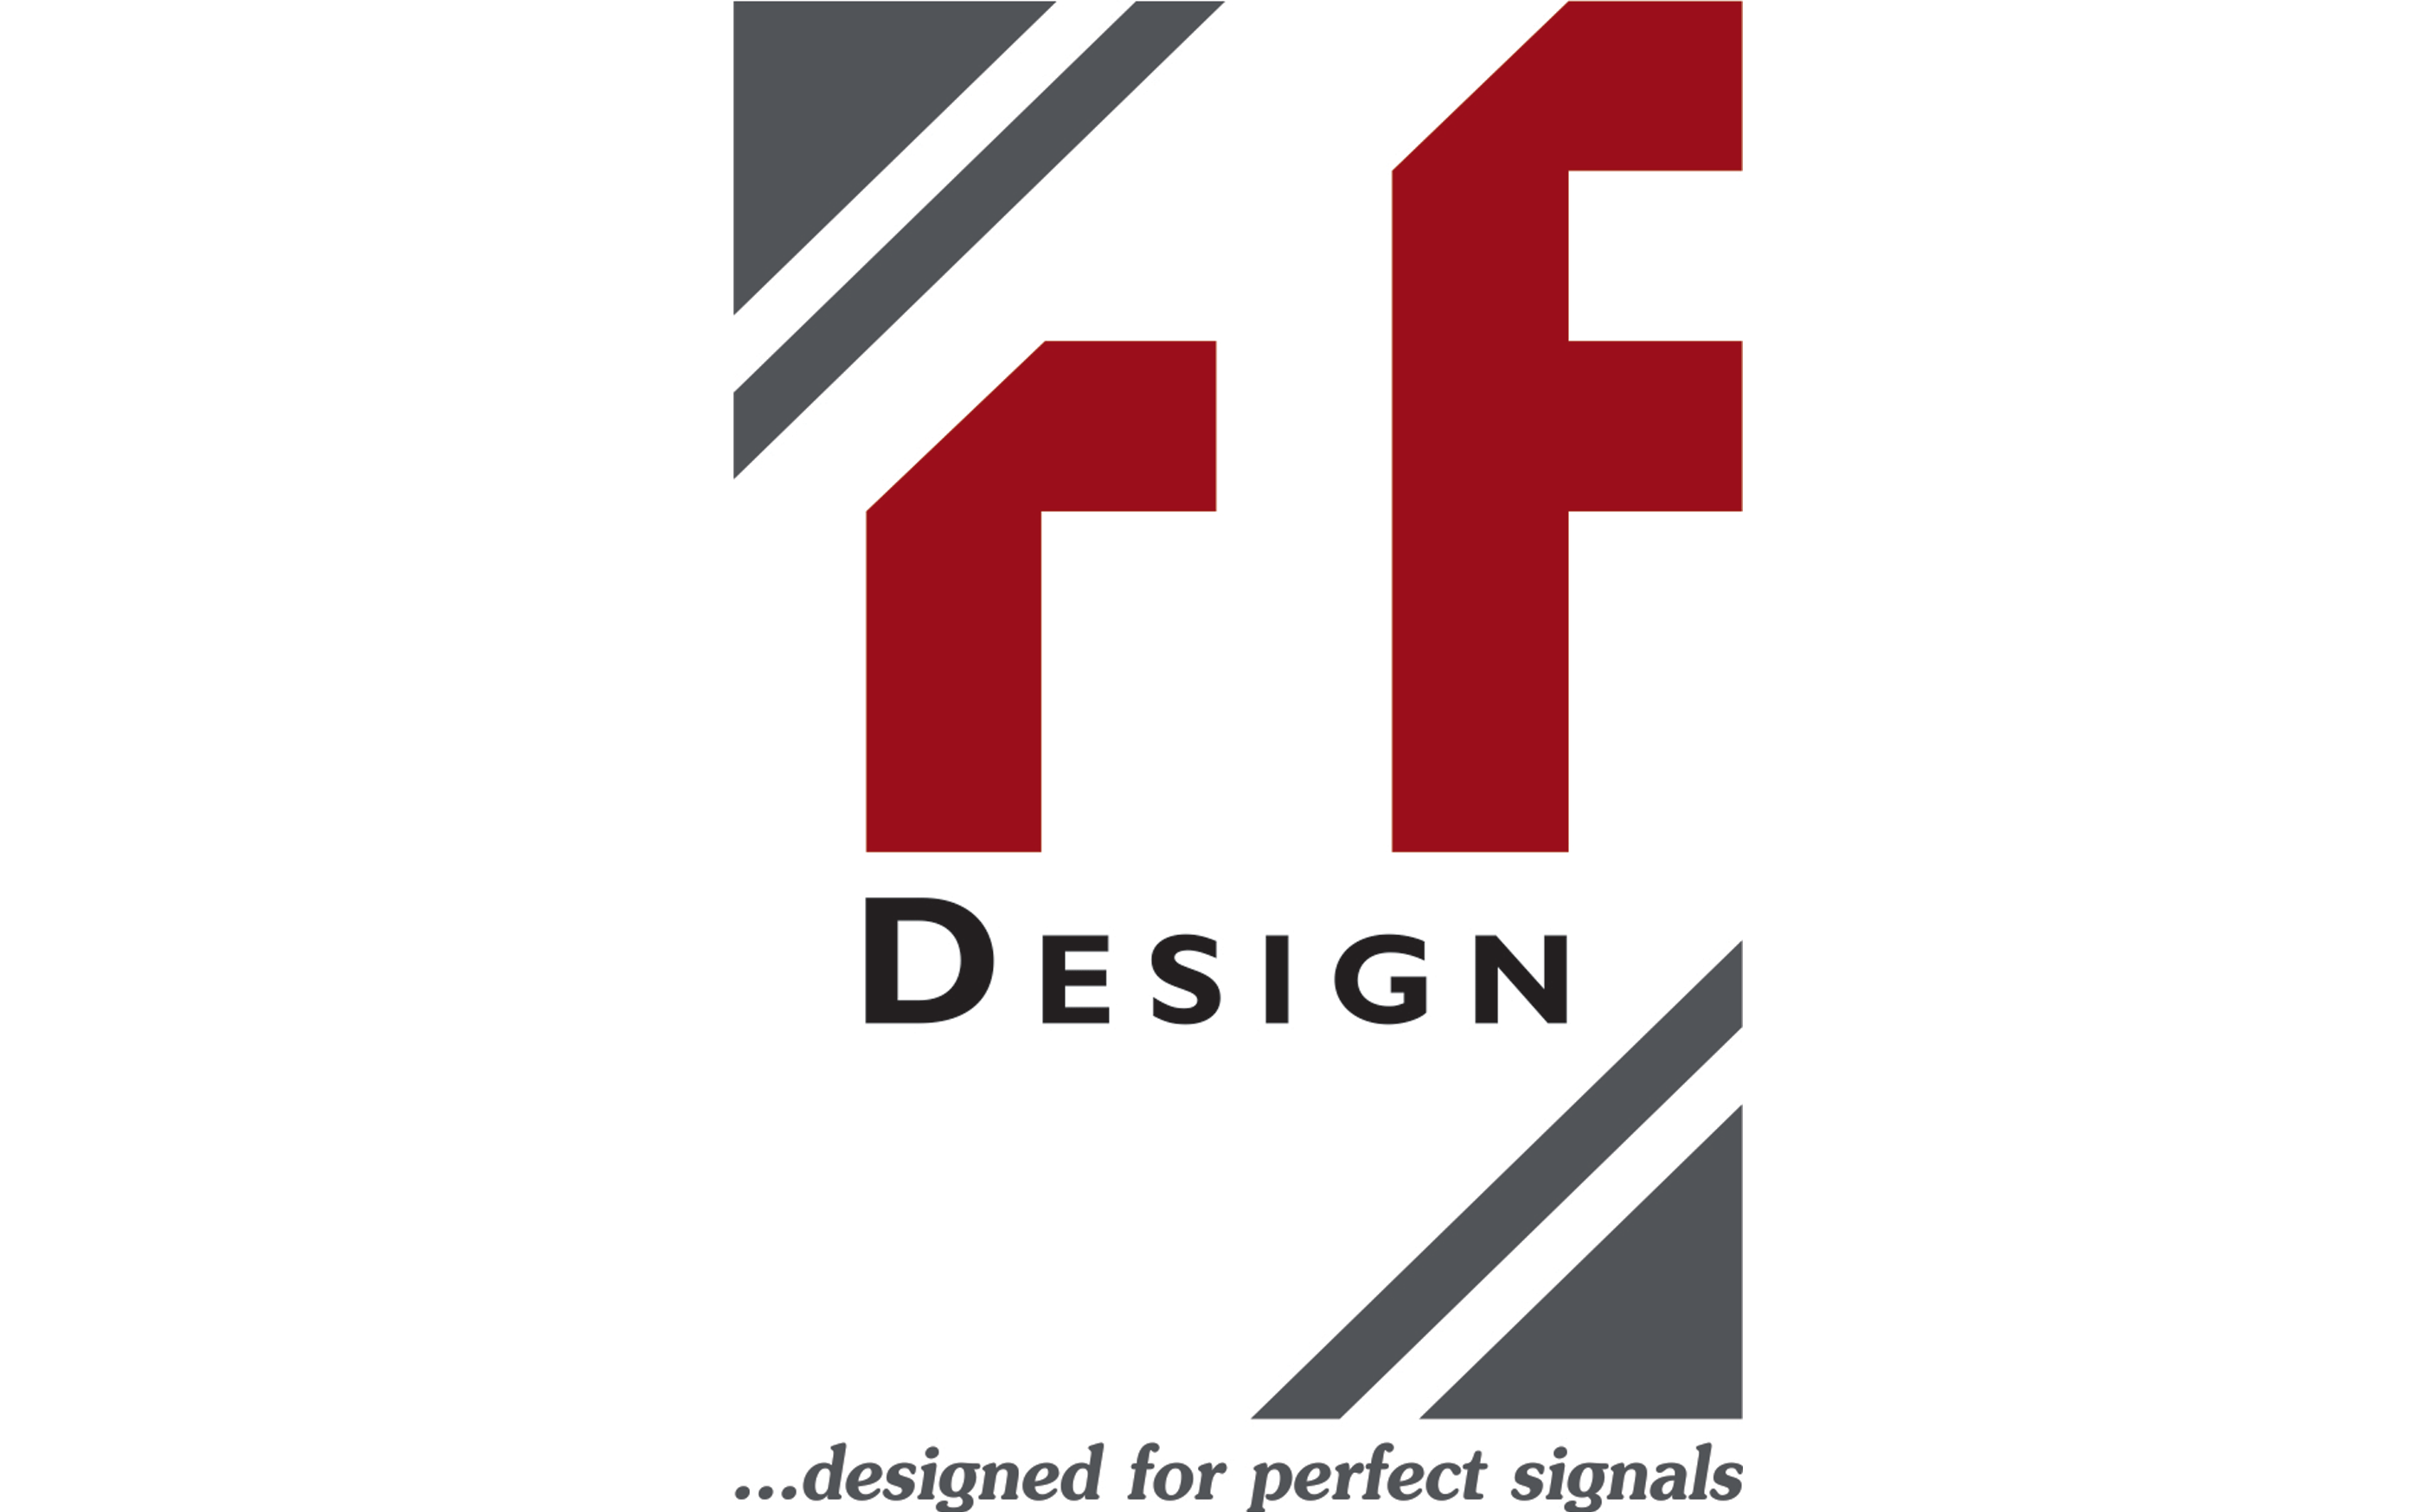 Rf design